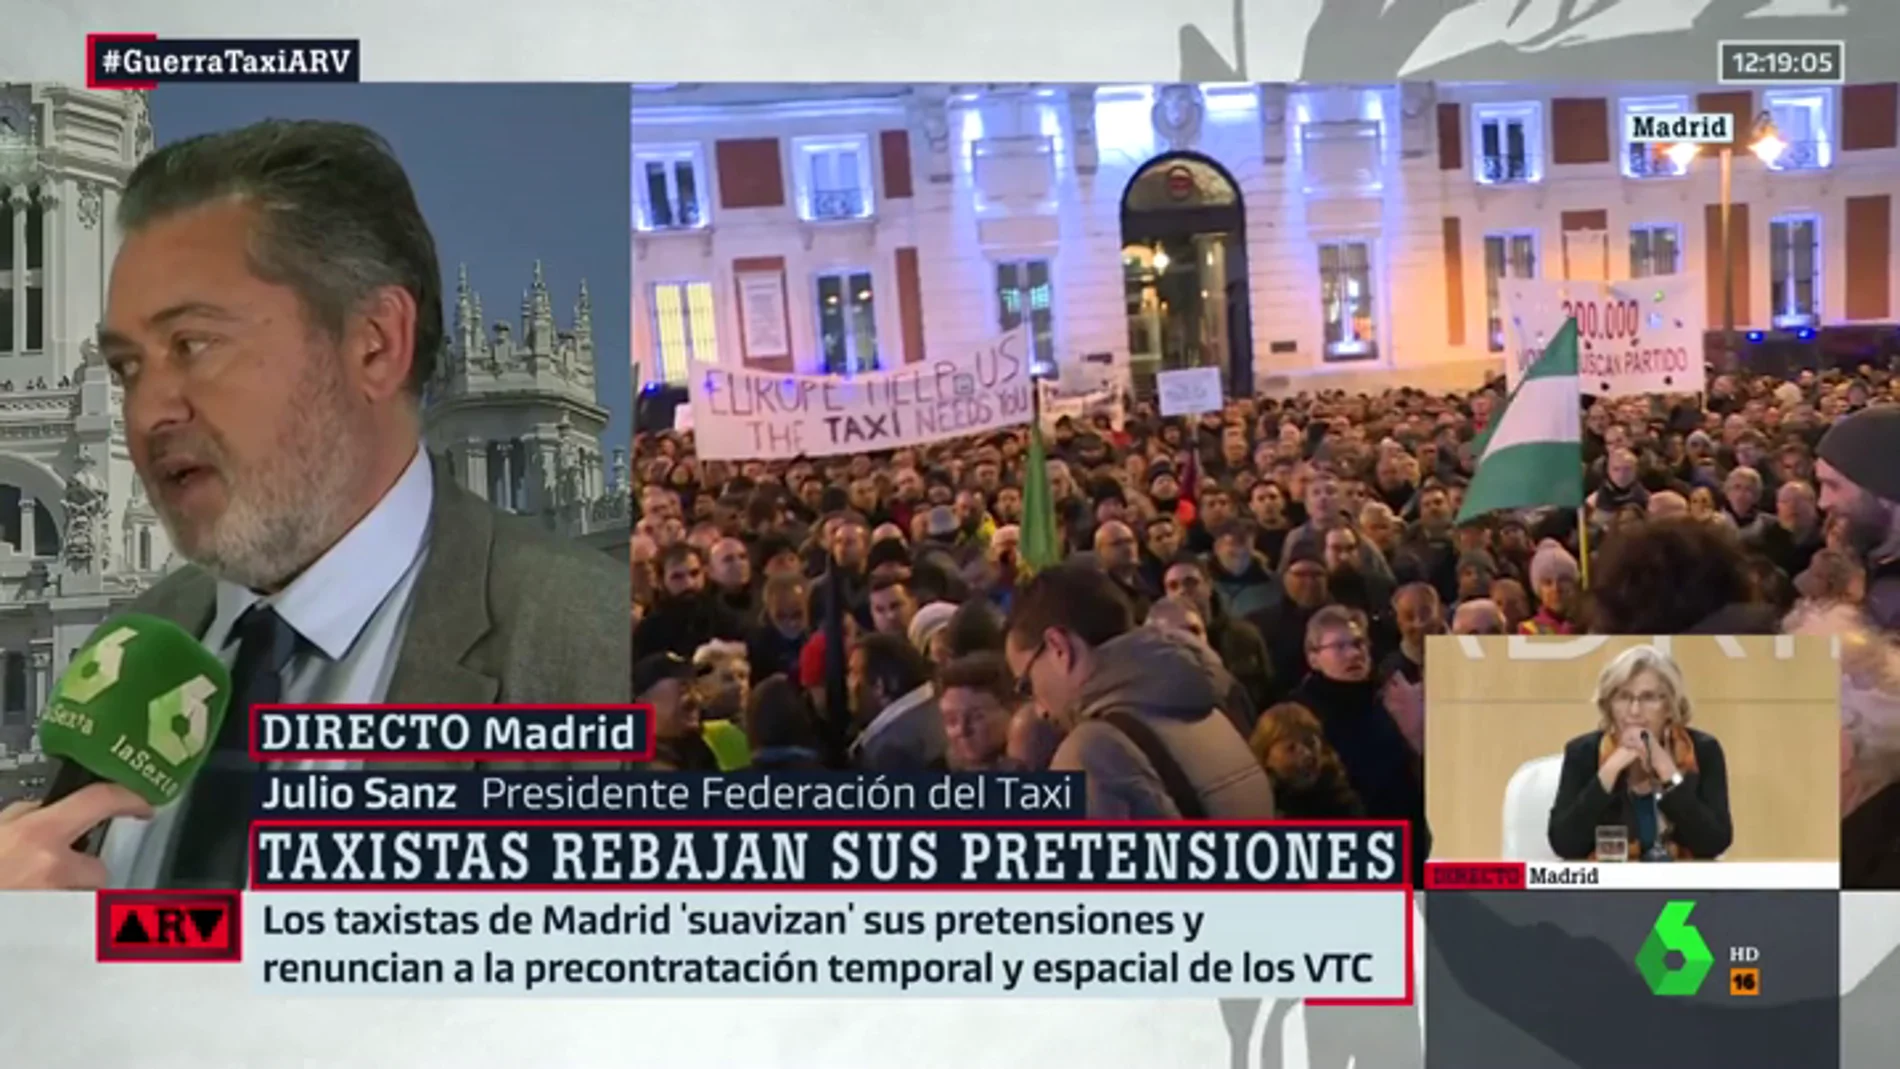 Julio Sanz (Federación Taxi): "Si recibimos la negativa por parte de la Comunidad de Madri, pensaremos en una estrategia más contundente"